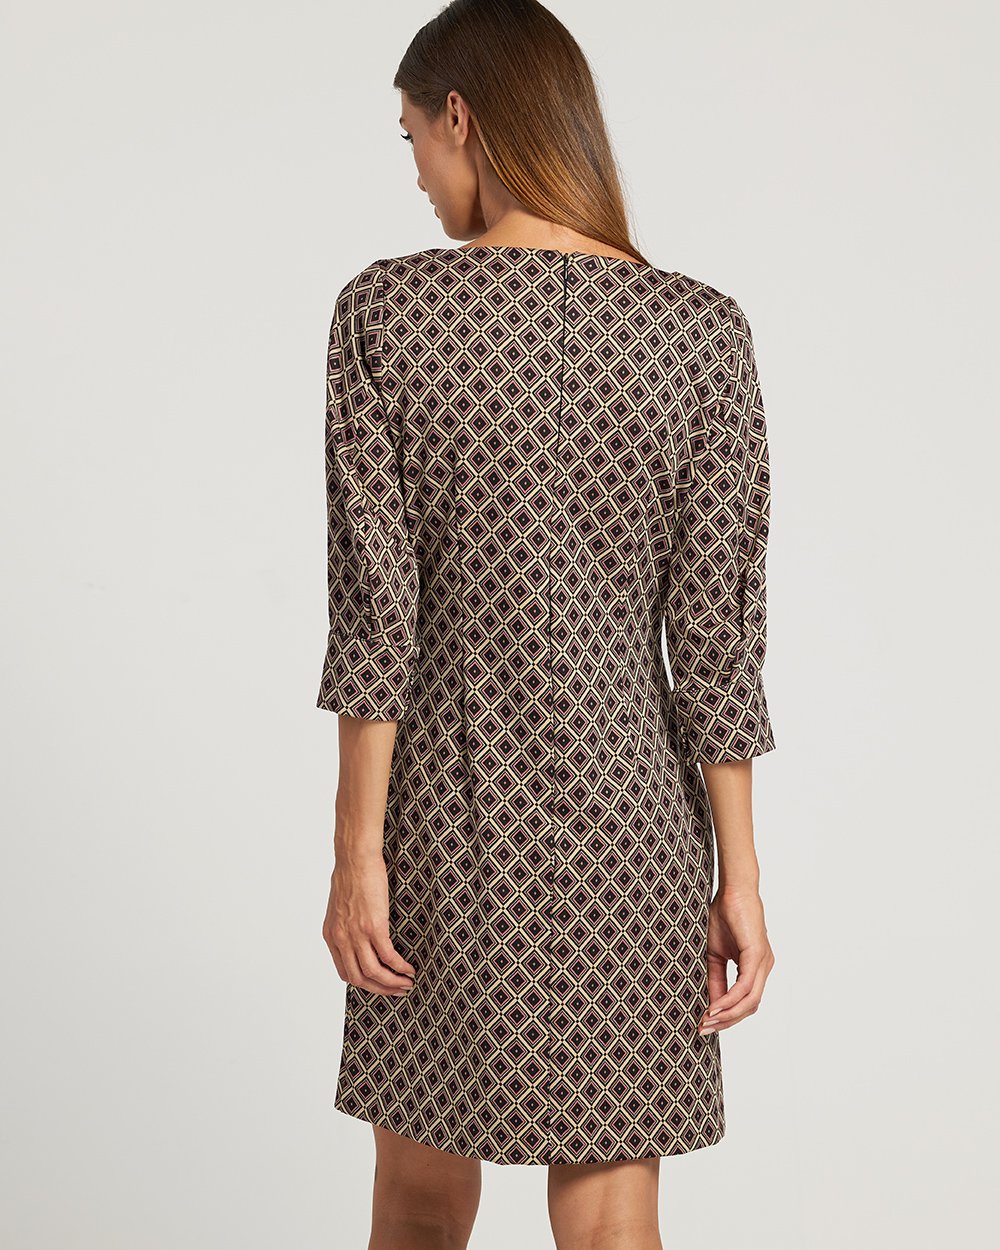 Φόρεμα σάκος με γεωμετρικά μοτίφ